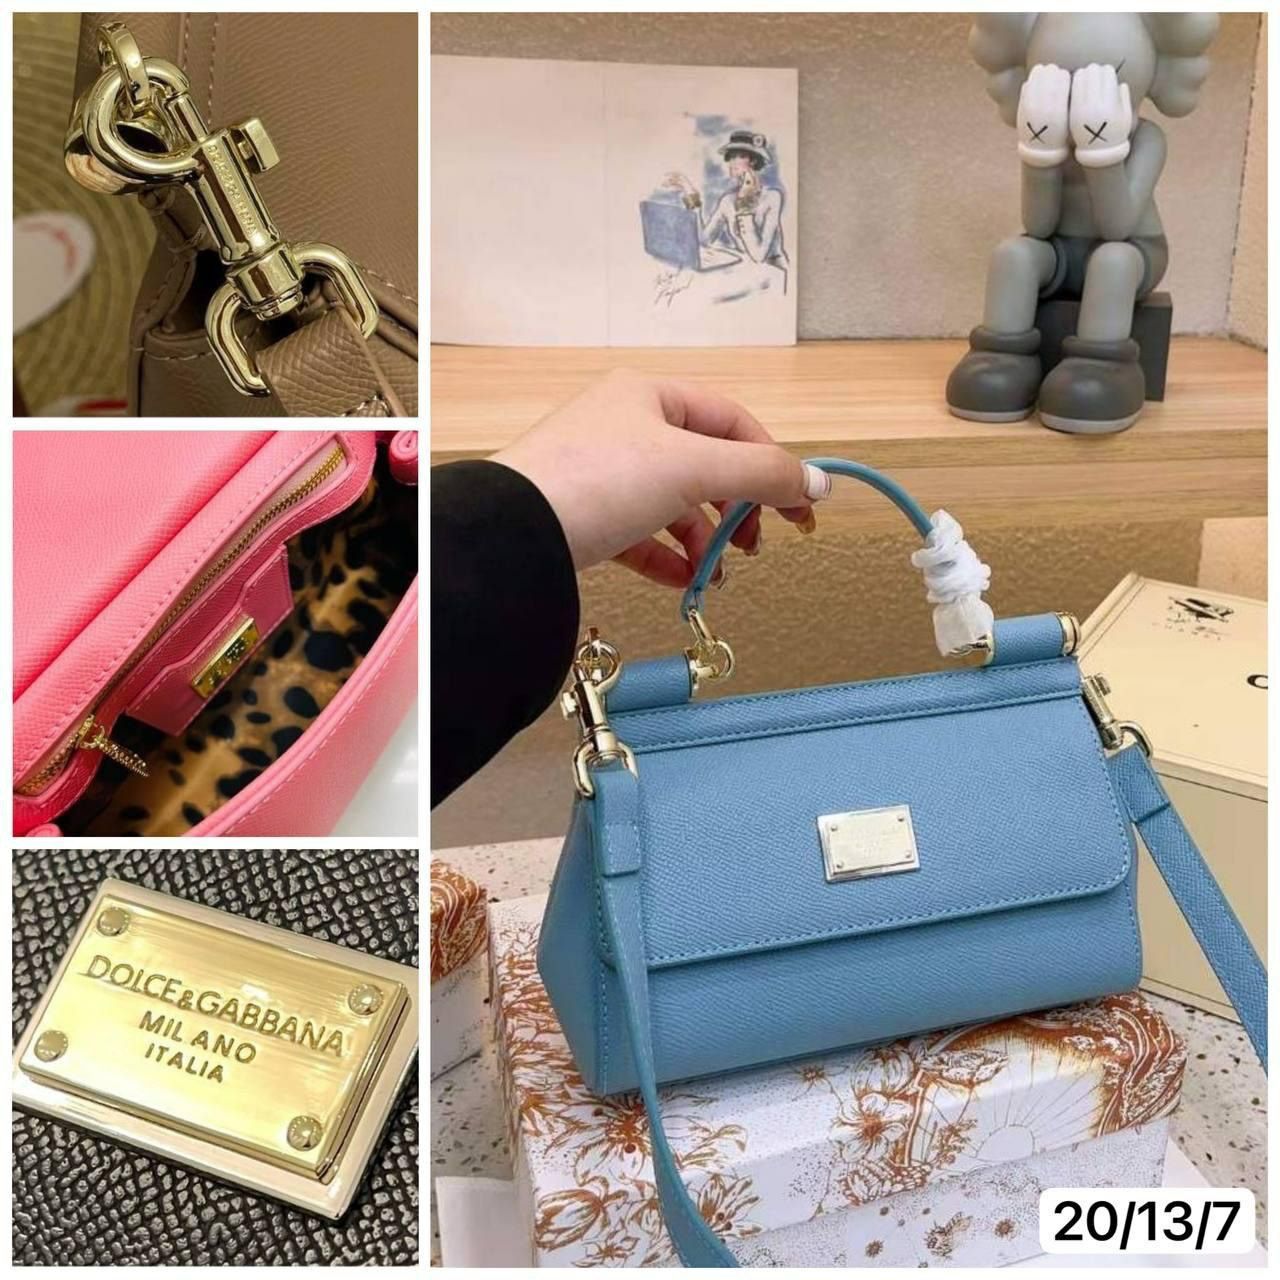 Сумка Dolce&Gabbana в фирменной подарочной коробке